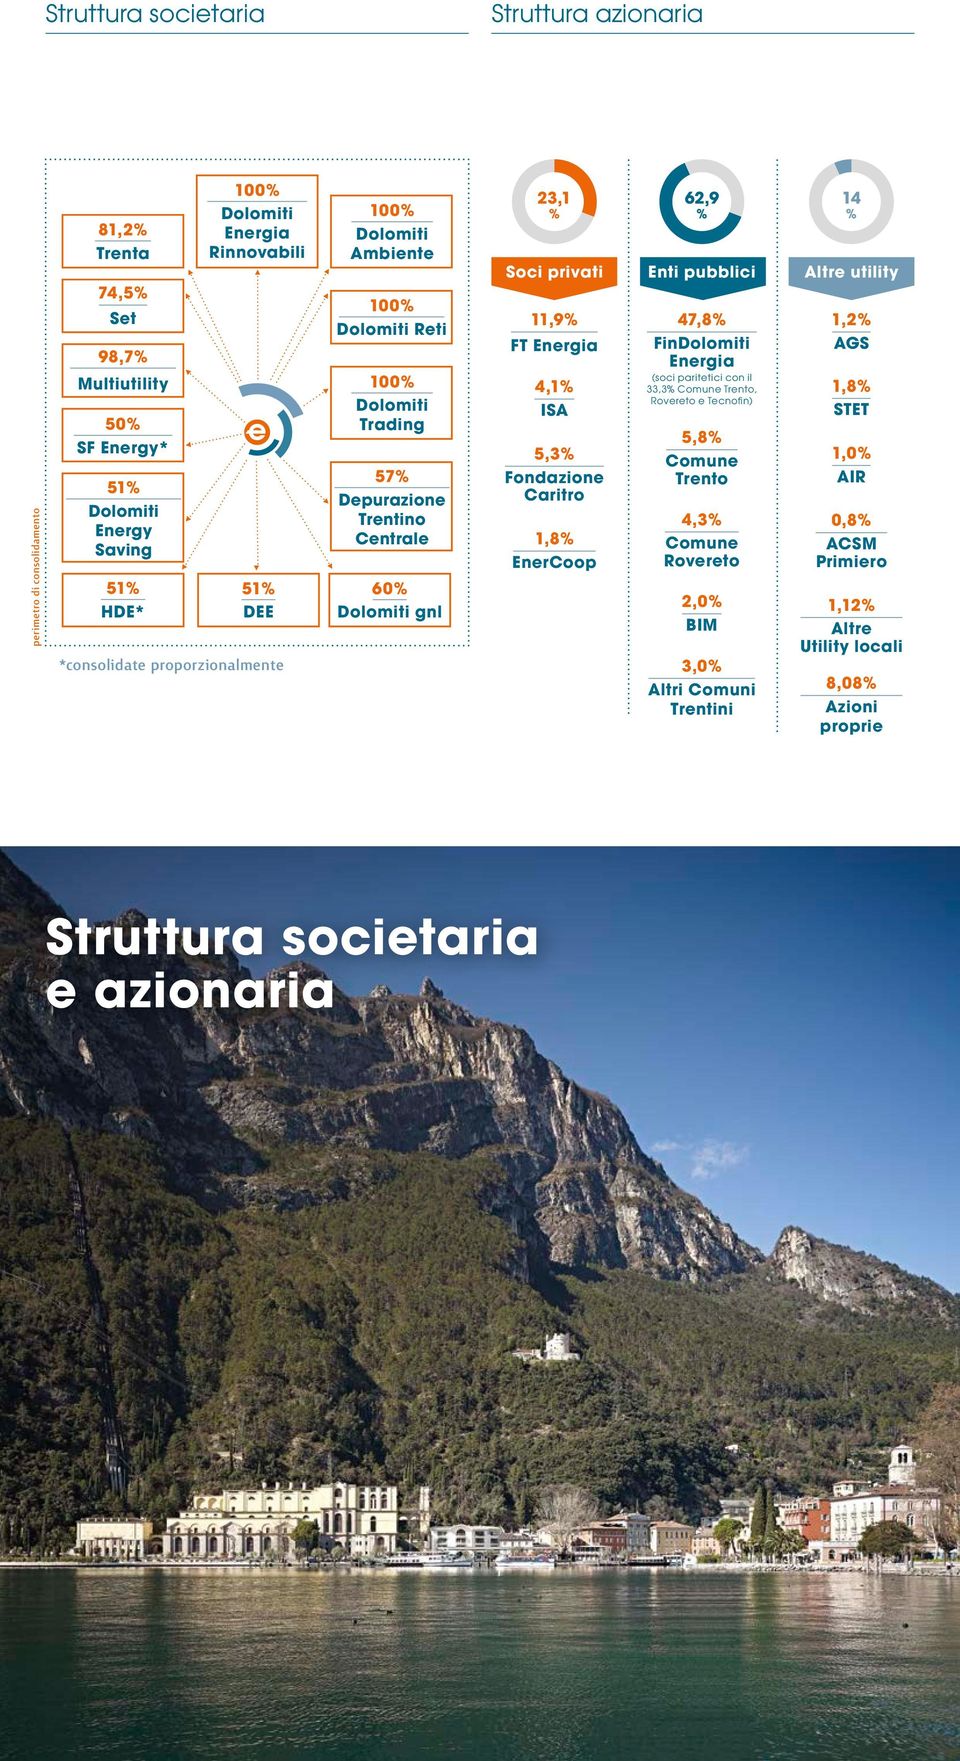 pubblici Altre utility 11,9% FT Energia 4,1% ISA 5,3% Fondazione Caritro 1,8% EnerCoop 47,8% FinDolomiti Energia (soci paritetici con il 33,3% Comune Trento, Rovereto e Tecnofin) 5,8%